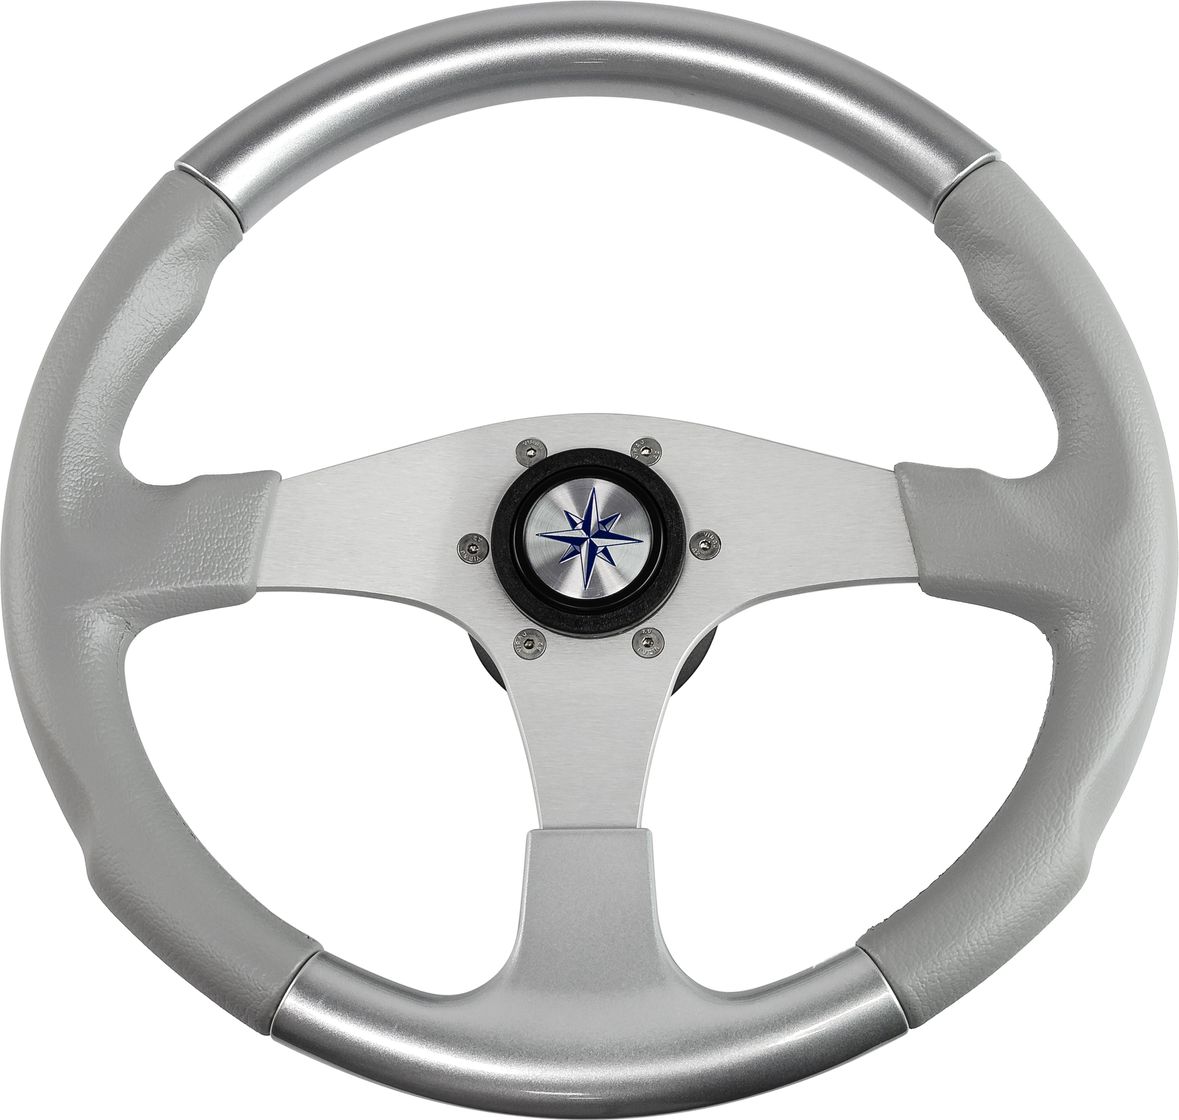 Рулевое колесо EVO MARINE 2 обод серосеребряный, спицы серебряные д. 355 мм VN850003-93 рулевое колесо riva rsl обод серый спицы серебряные д 320 мм vn732022 03